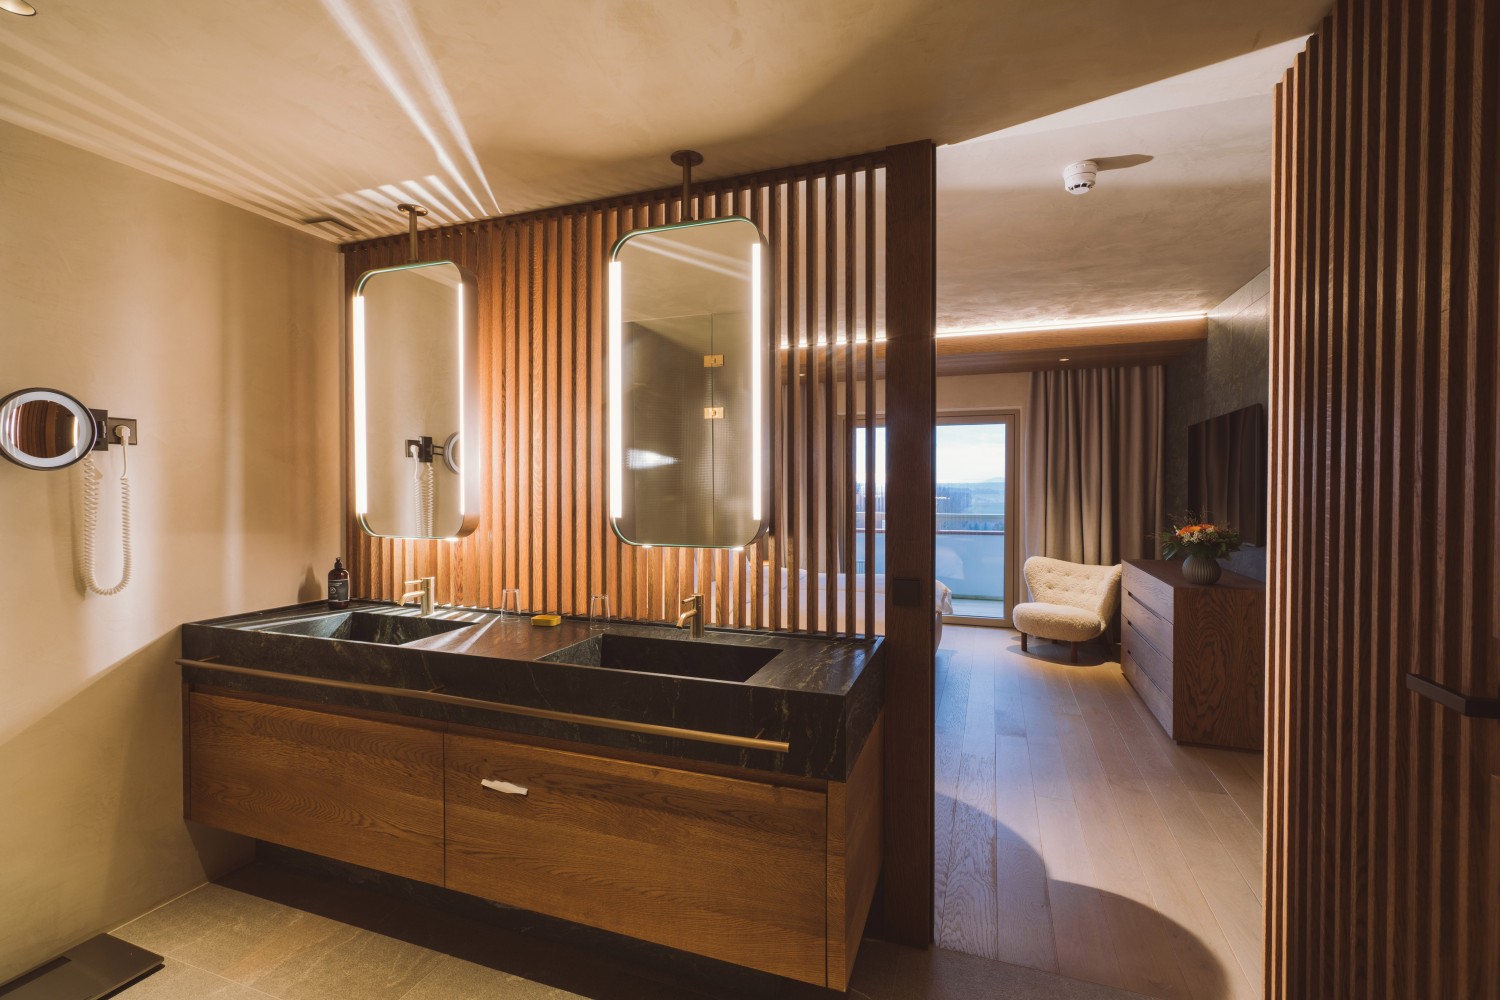 Hotel Reiters Supreme - Badezimmer von der Luxury Suite